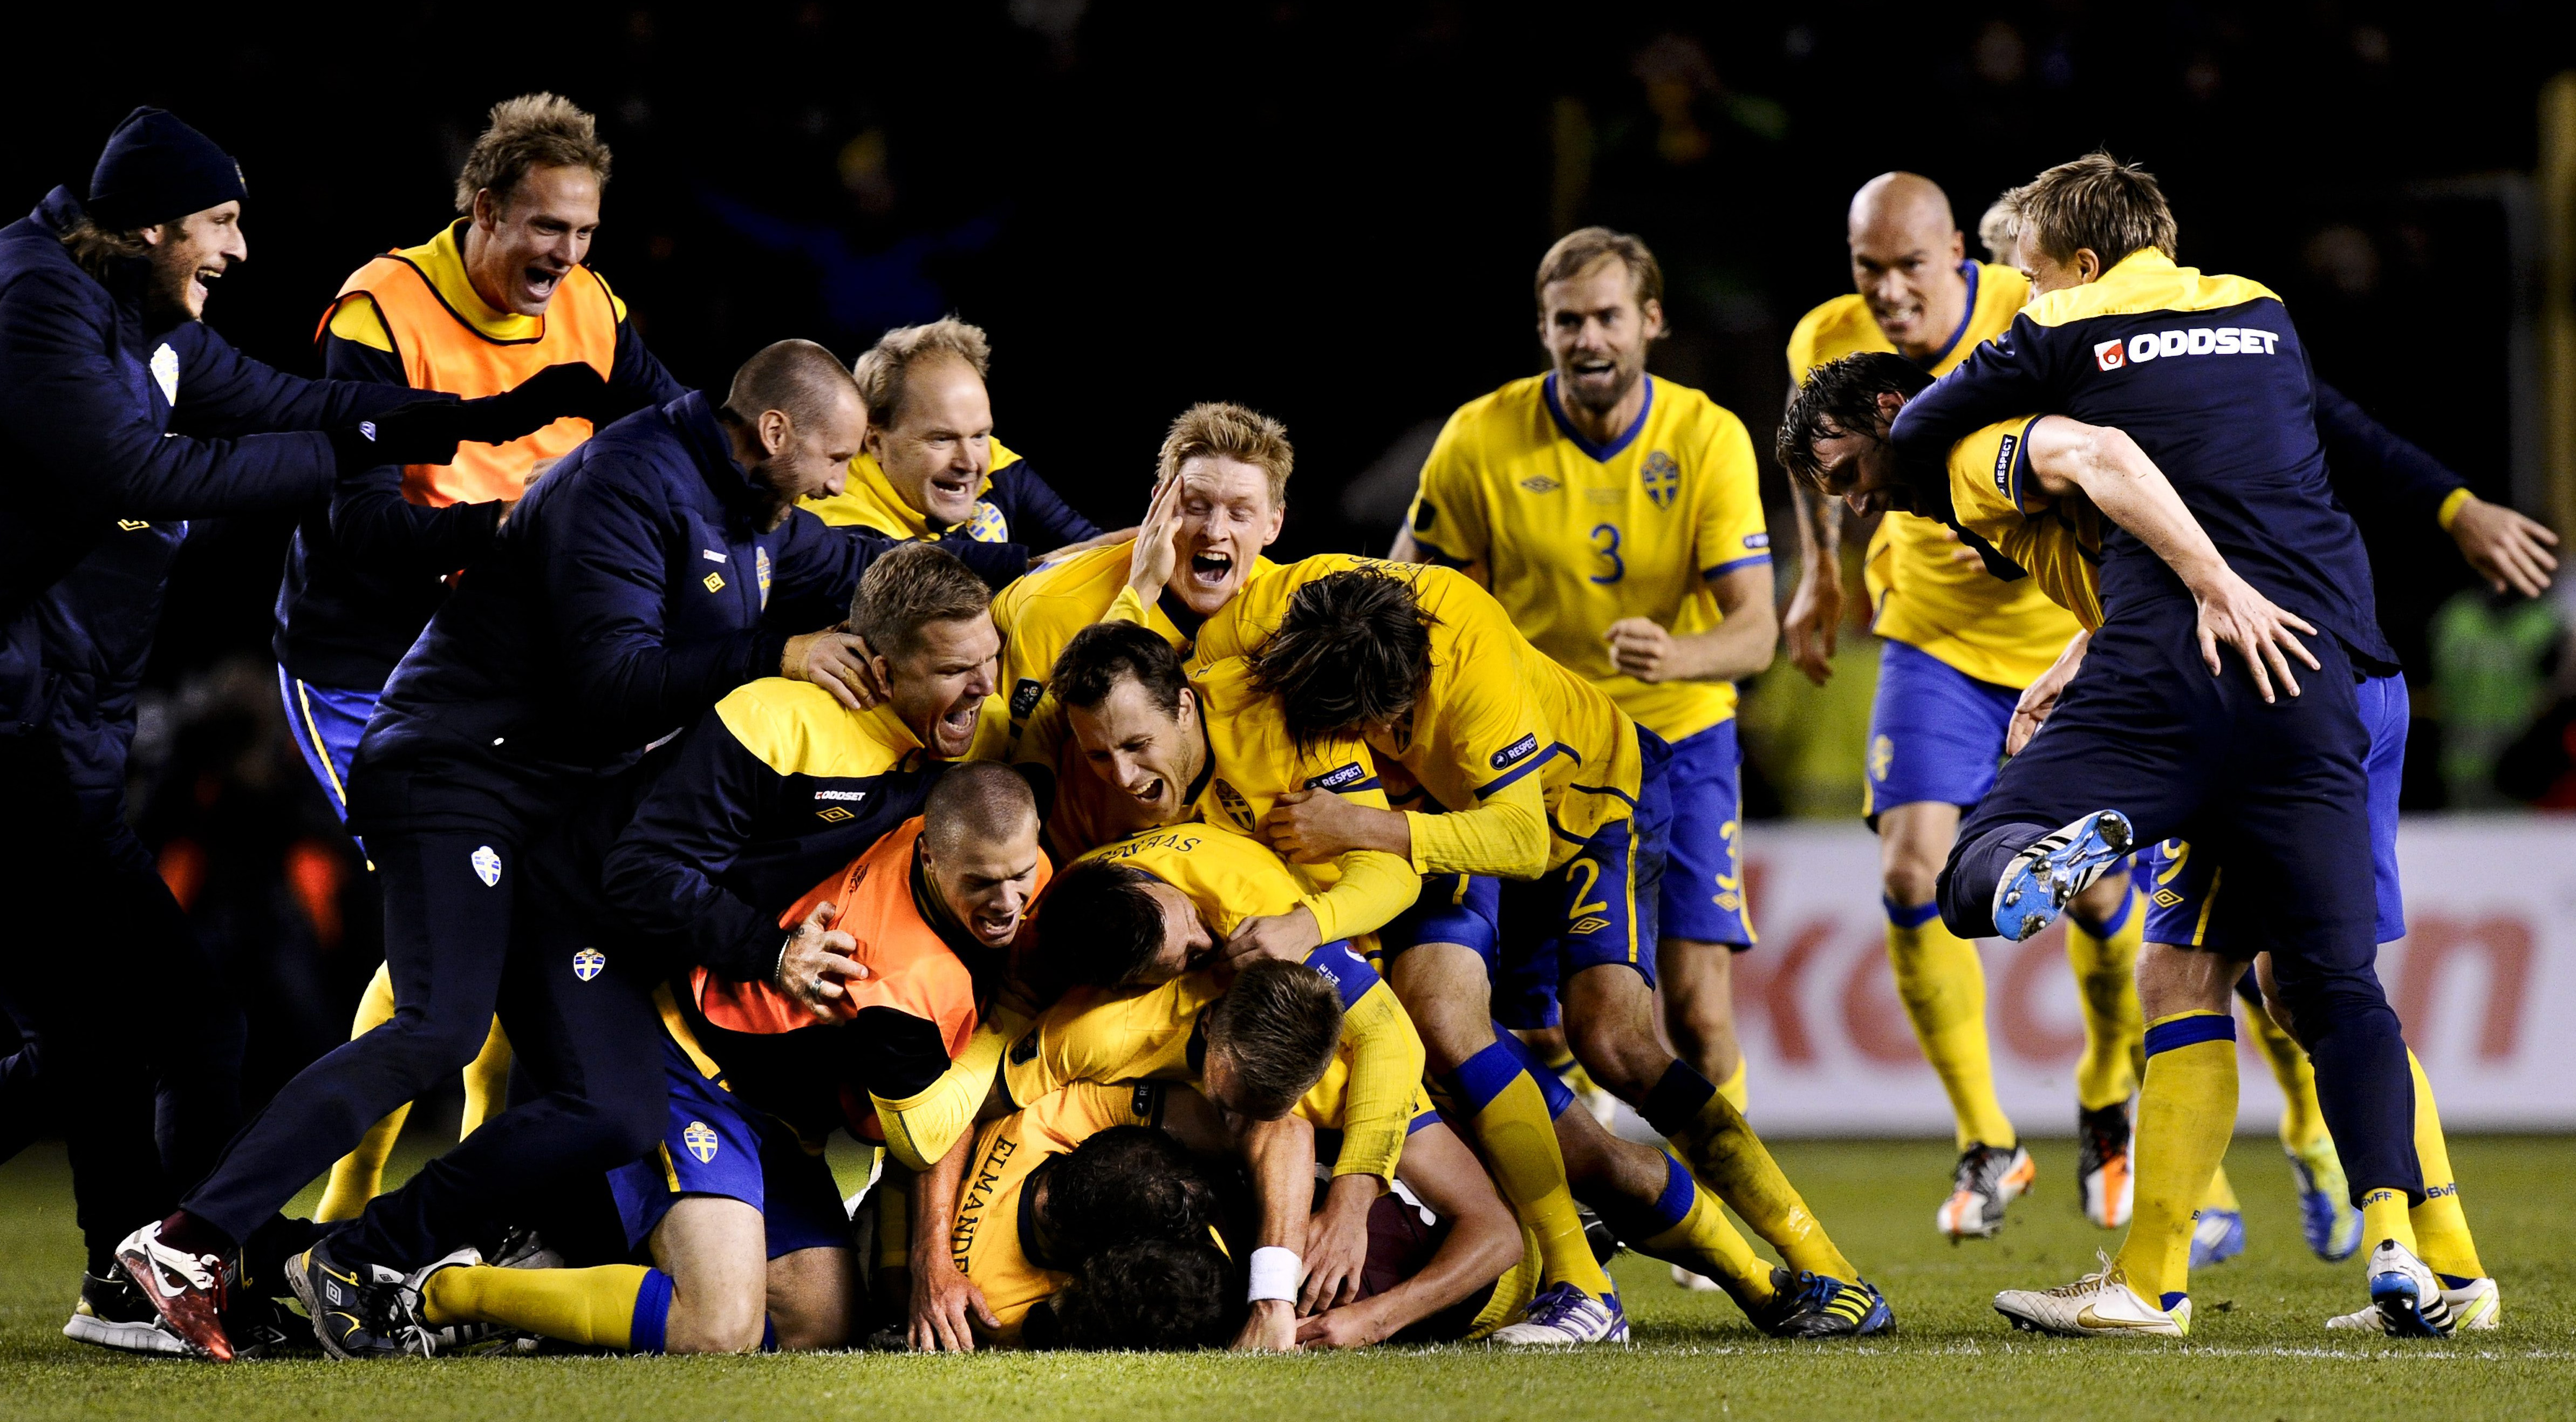 Sveriges seger mot Holland inspirerade danskarna. Här firar Sverige som just besegrat Holland och kvalat sig till EM. 